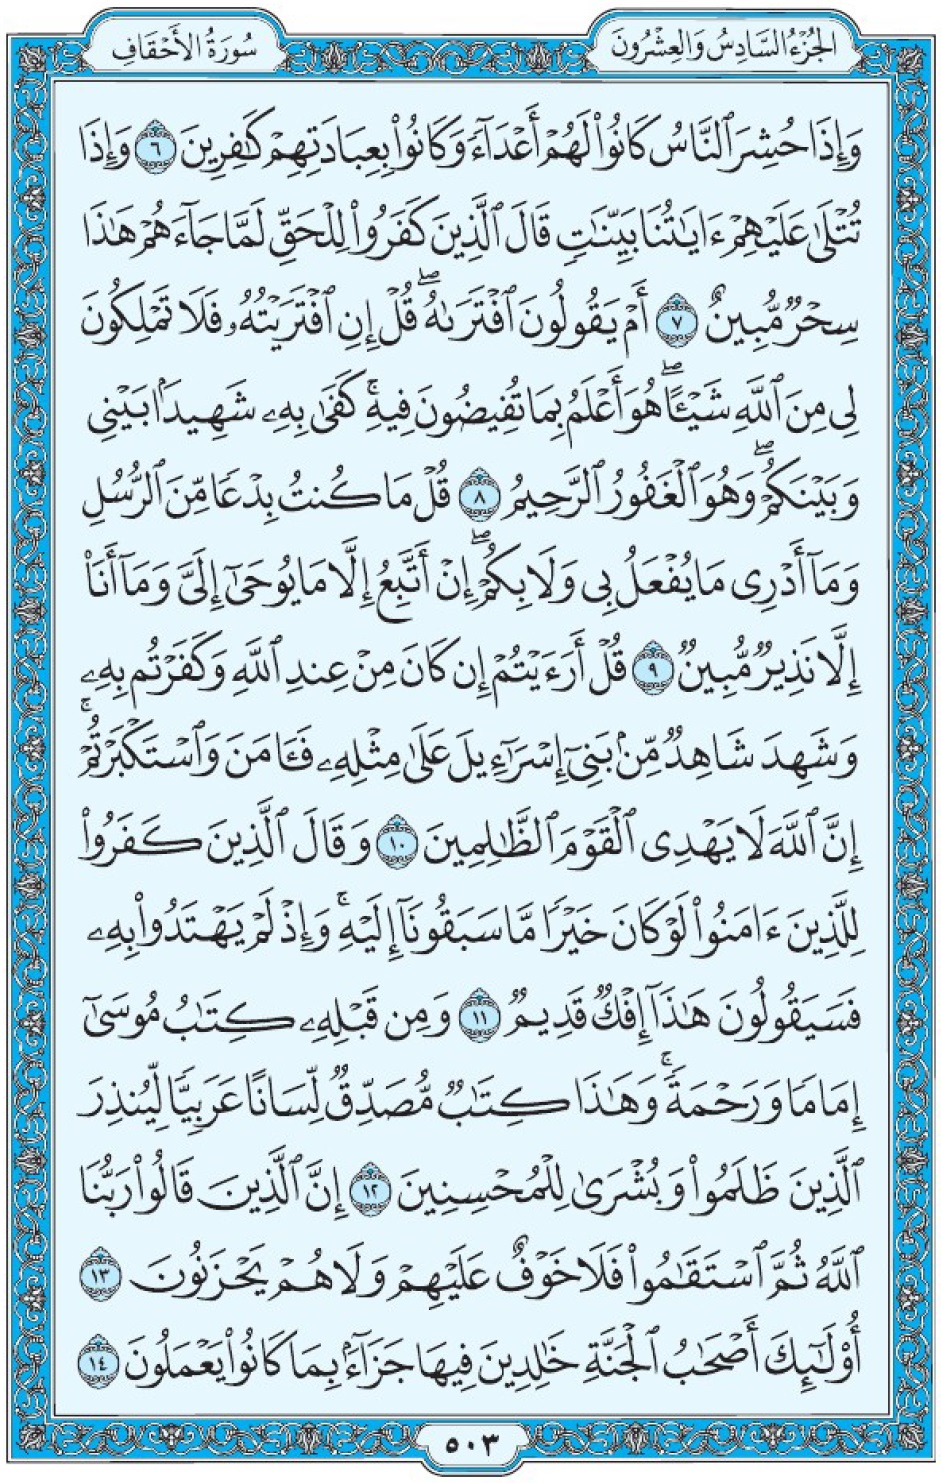 Коран Мединский мусхаф страница 503, Аль-Ахкаф, аят 6-14